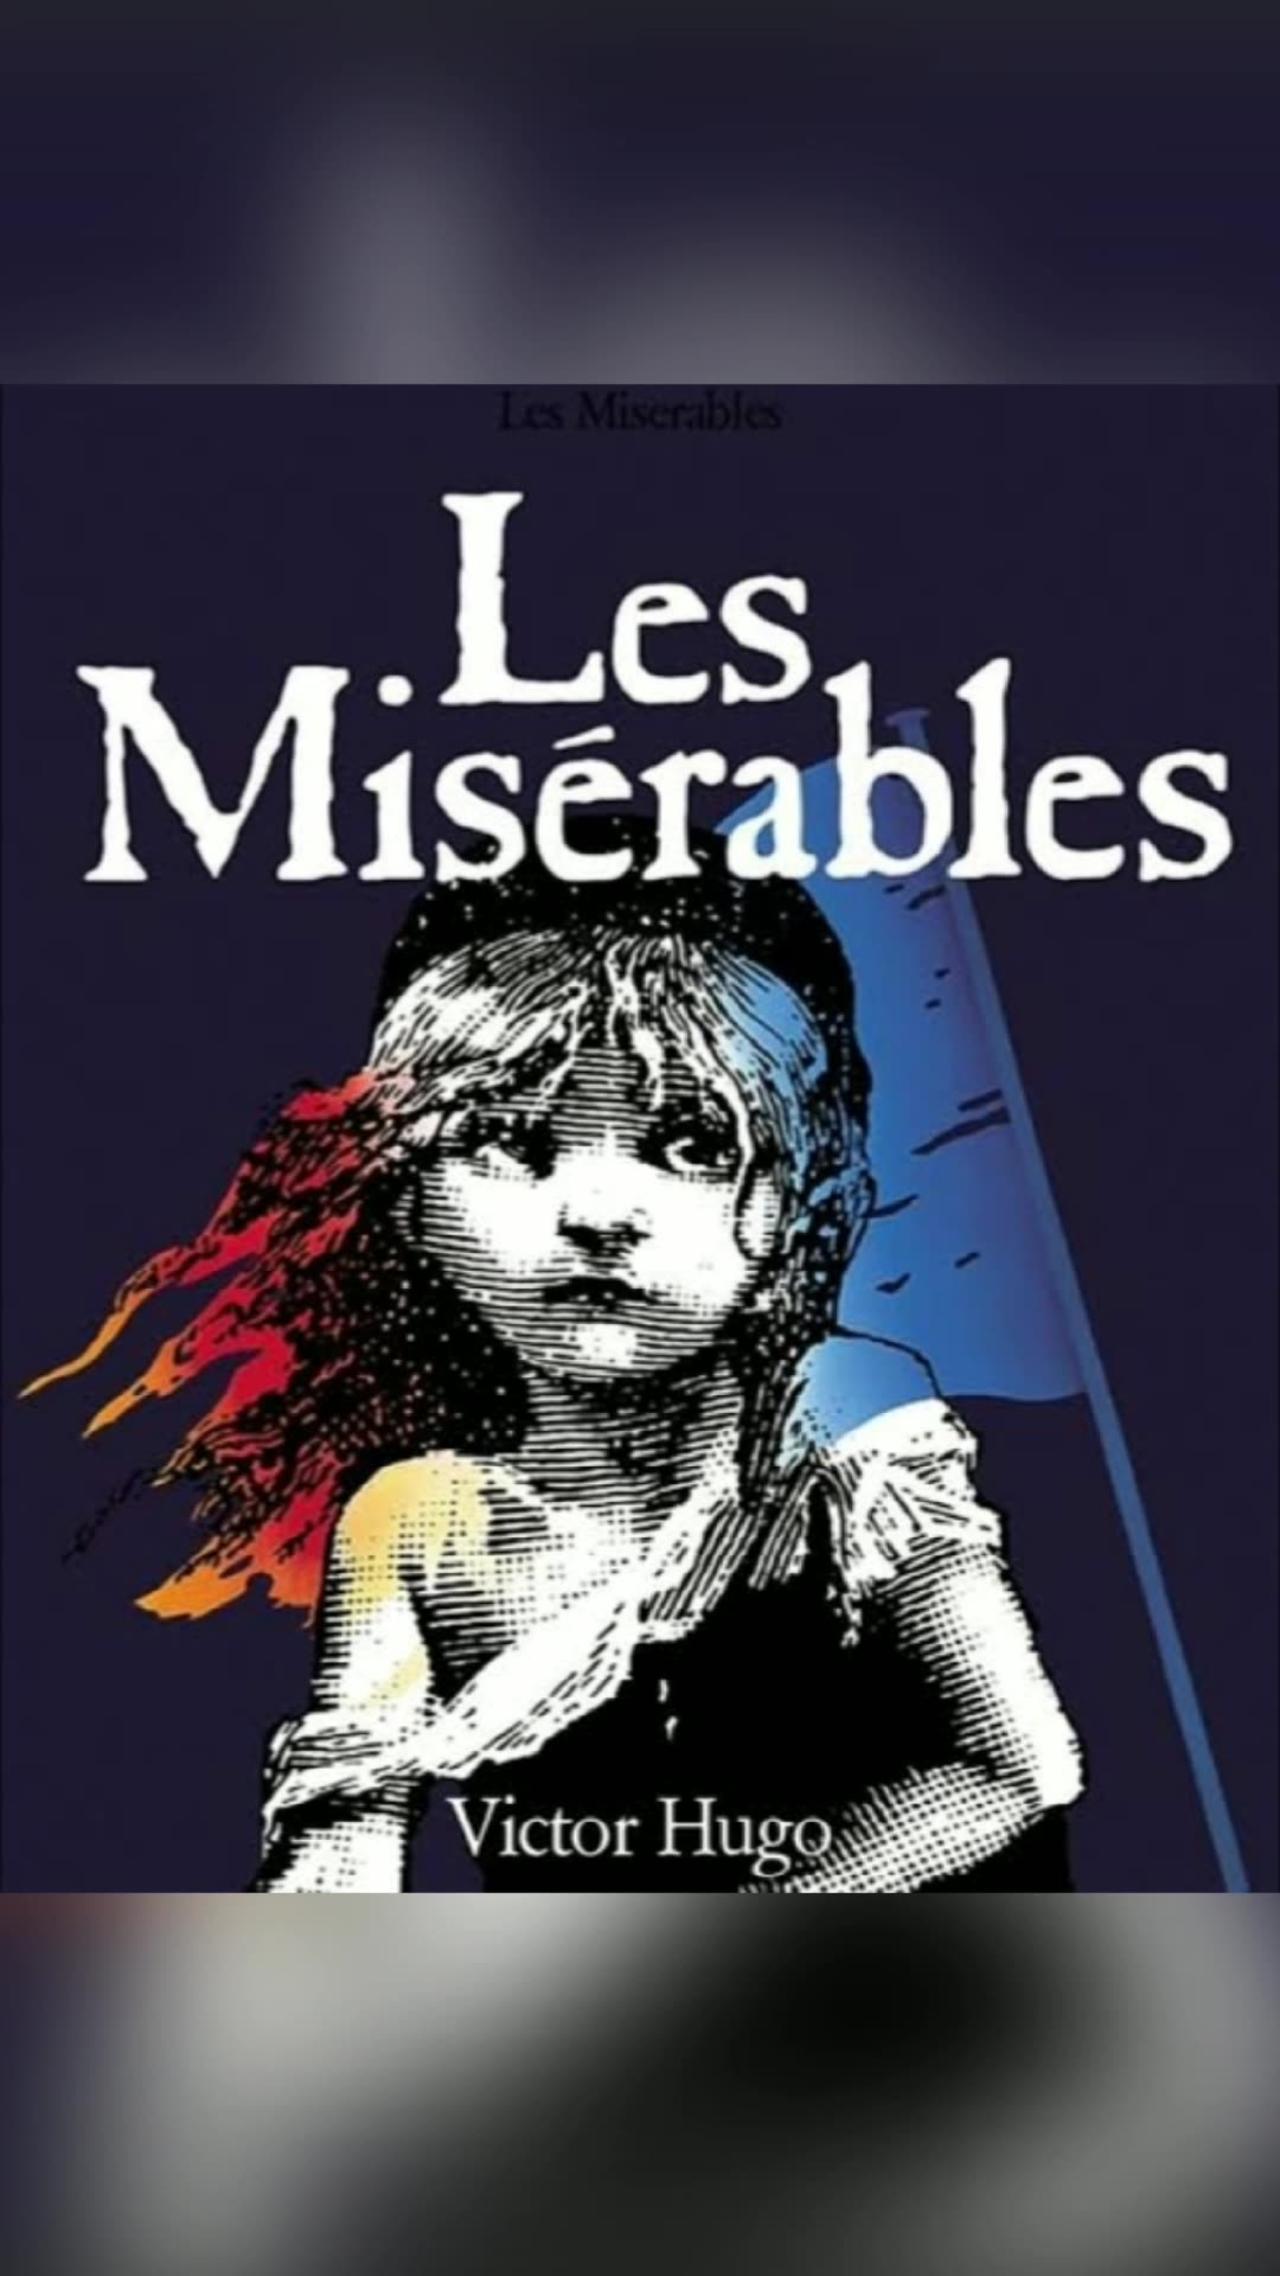 Les Misérables by Victor Hugo-book review